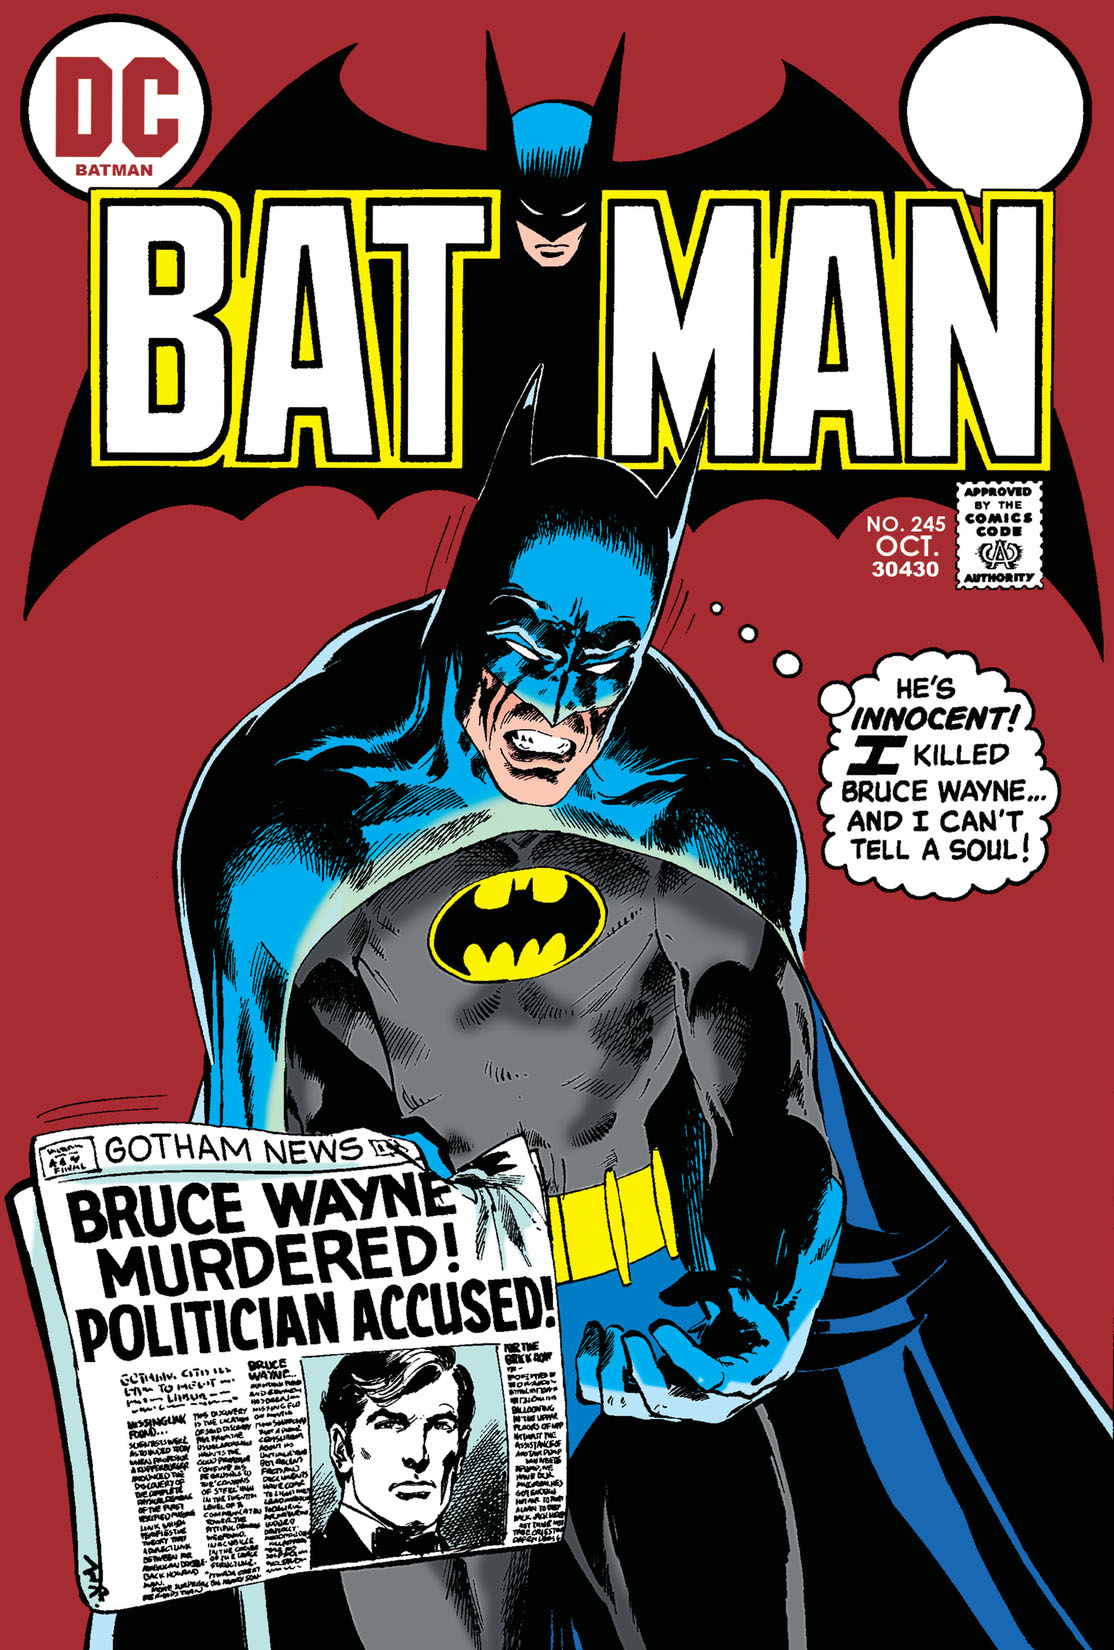 Batman (1940-) #245 preview images